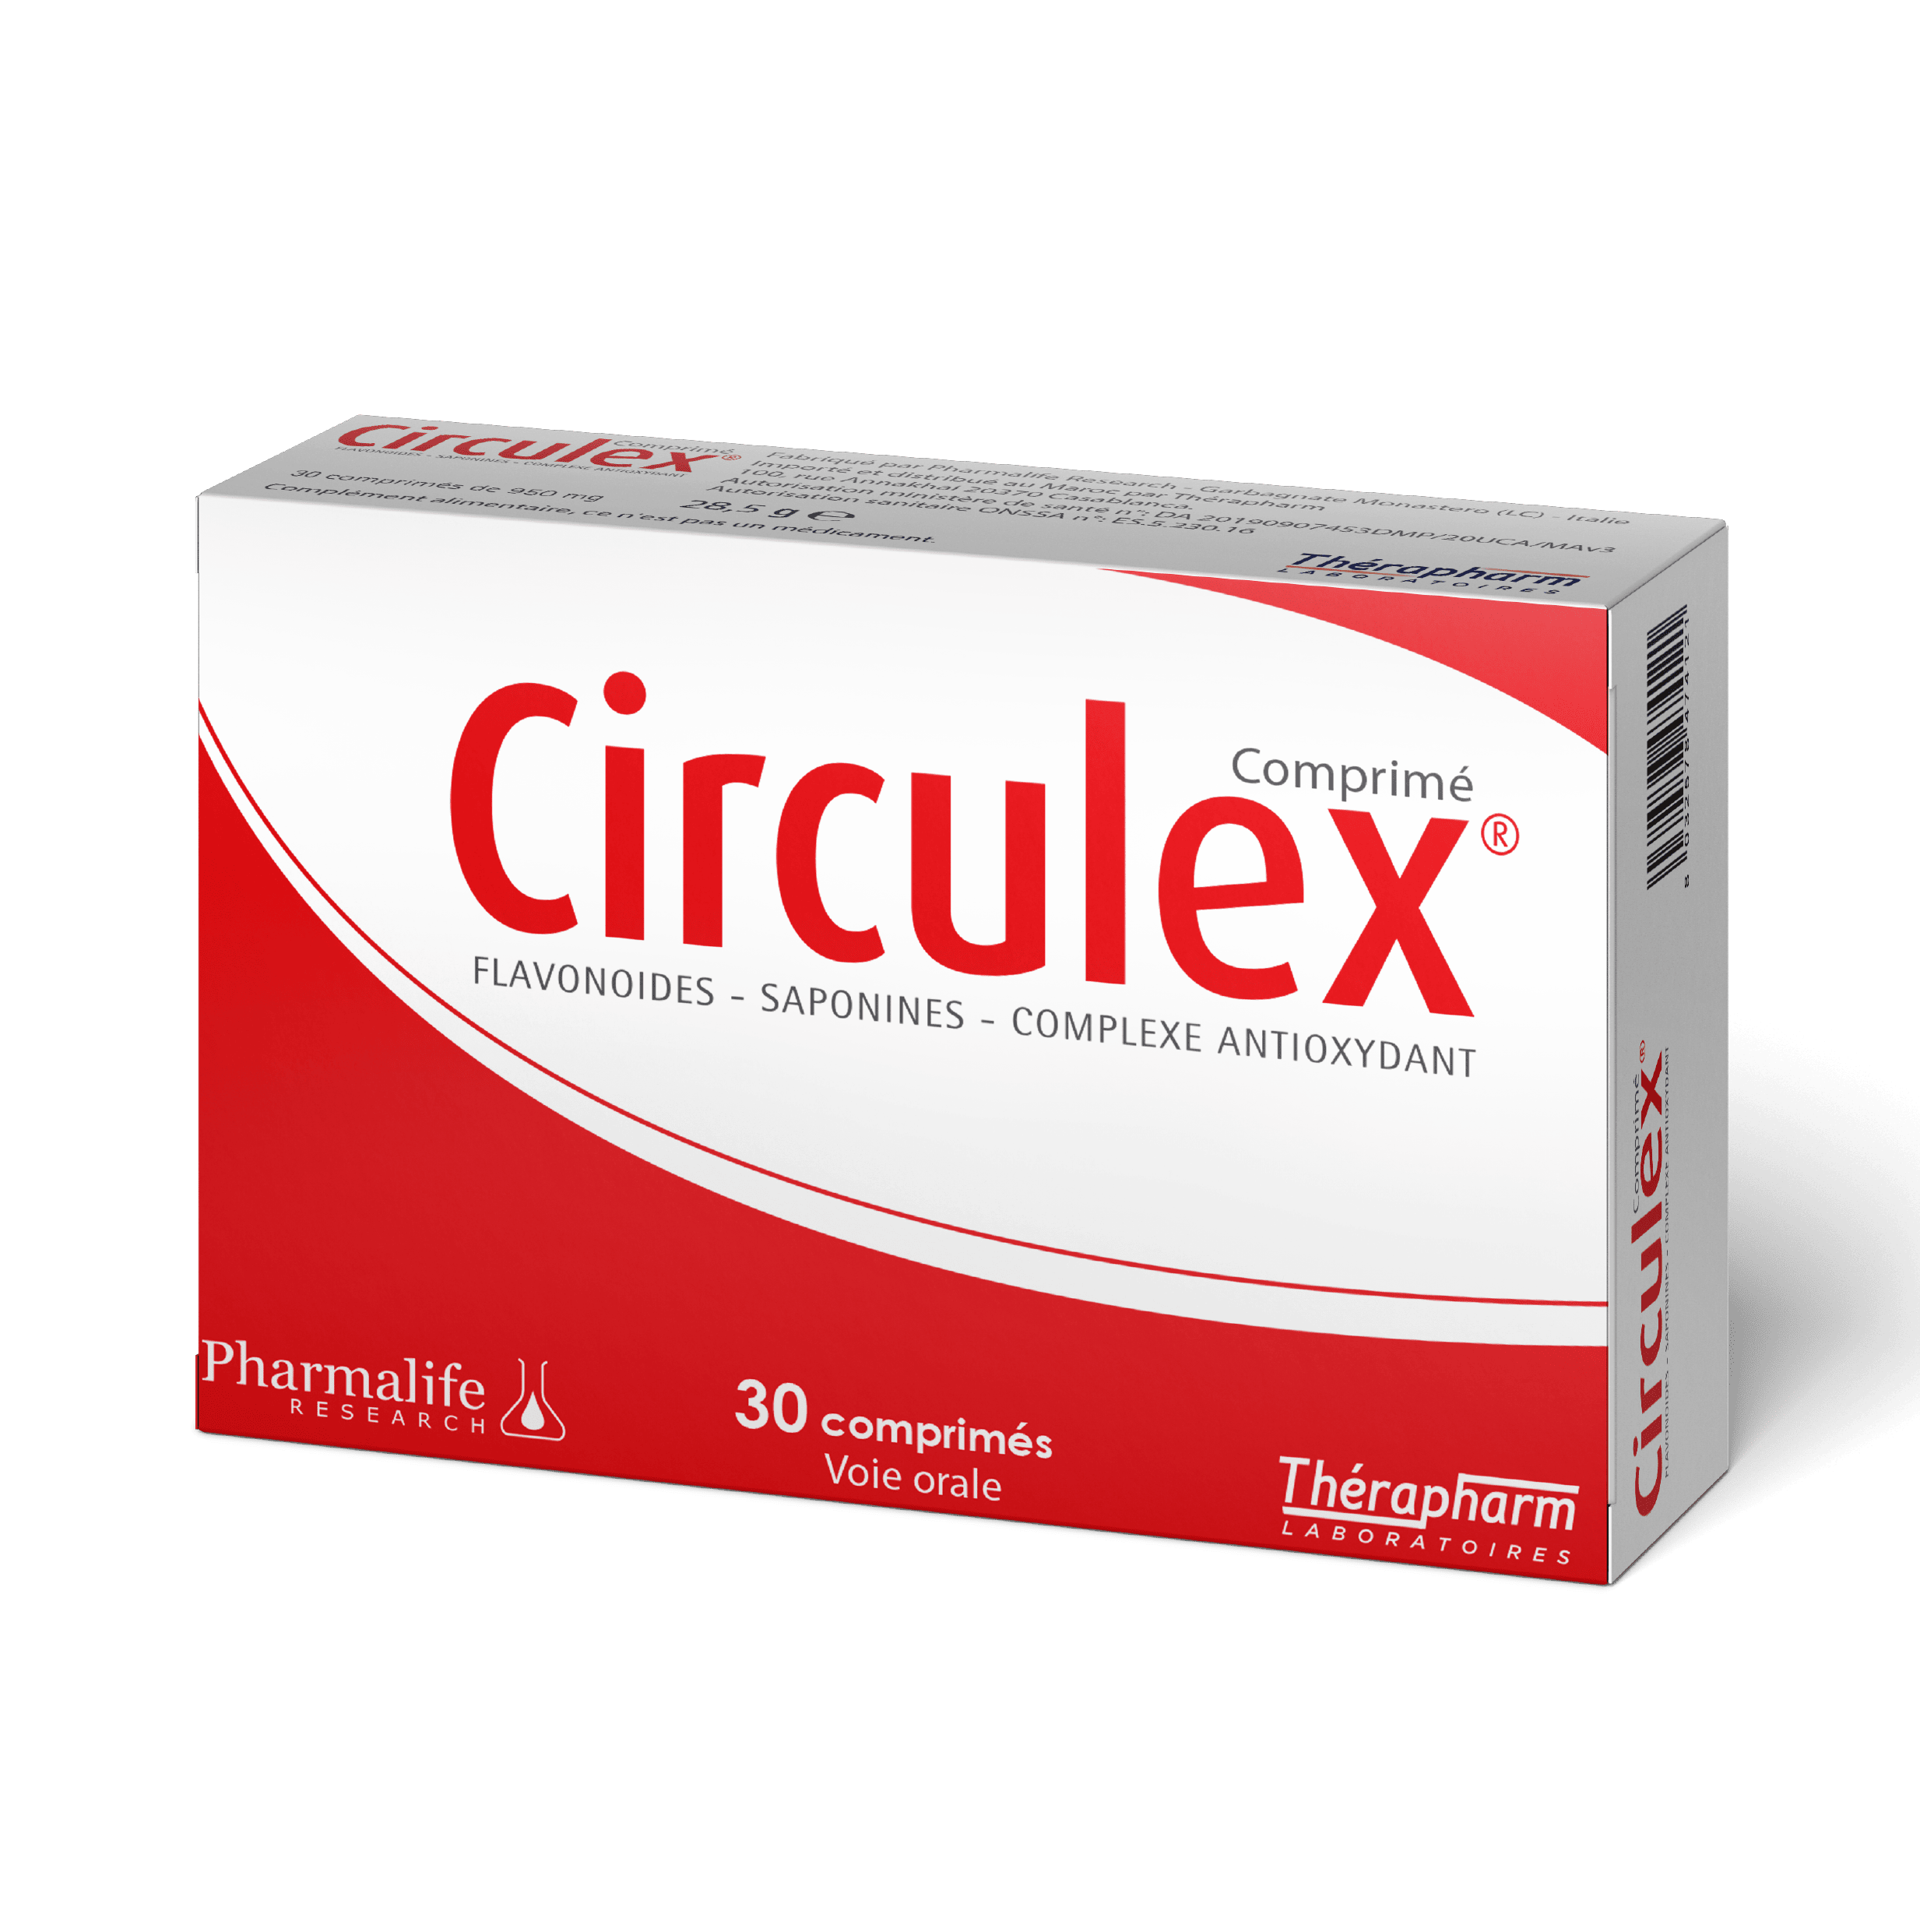 CIRCULEX ®